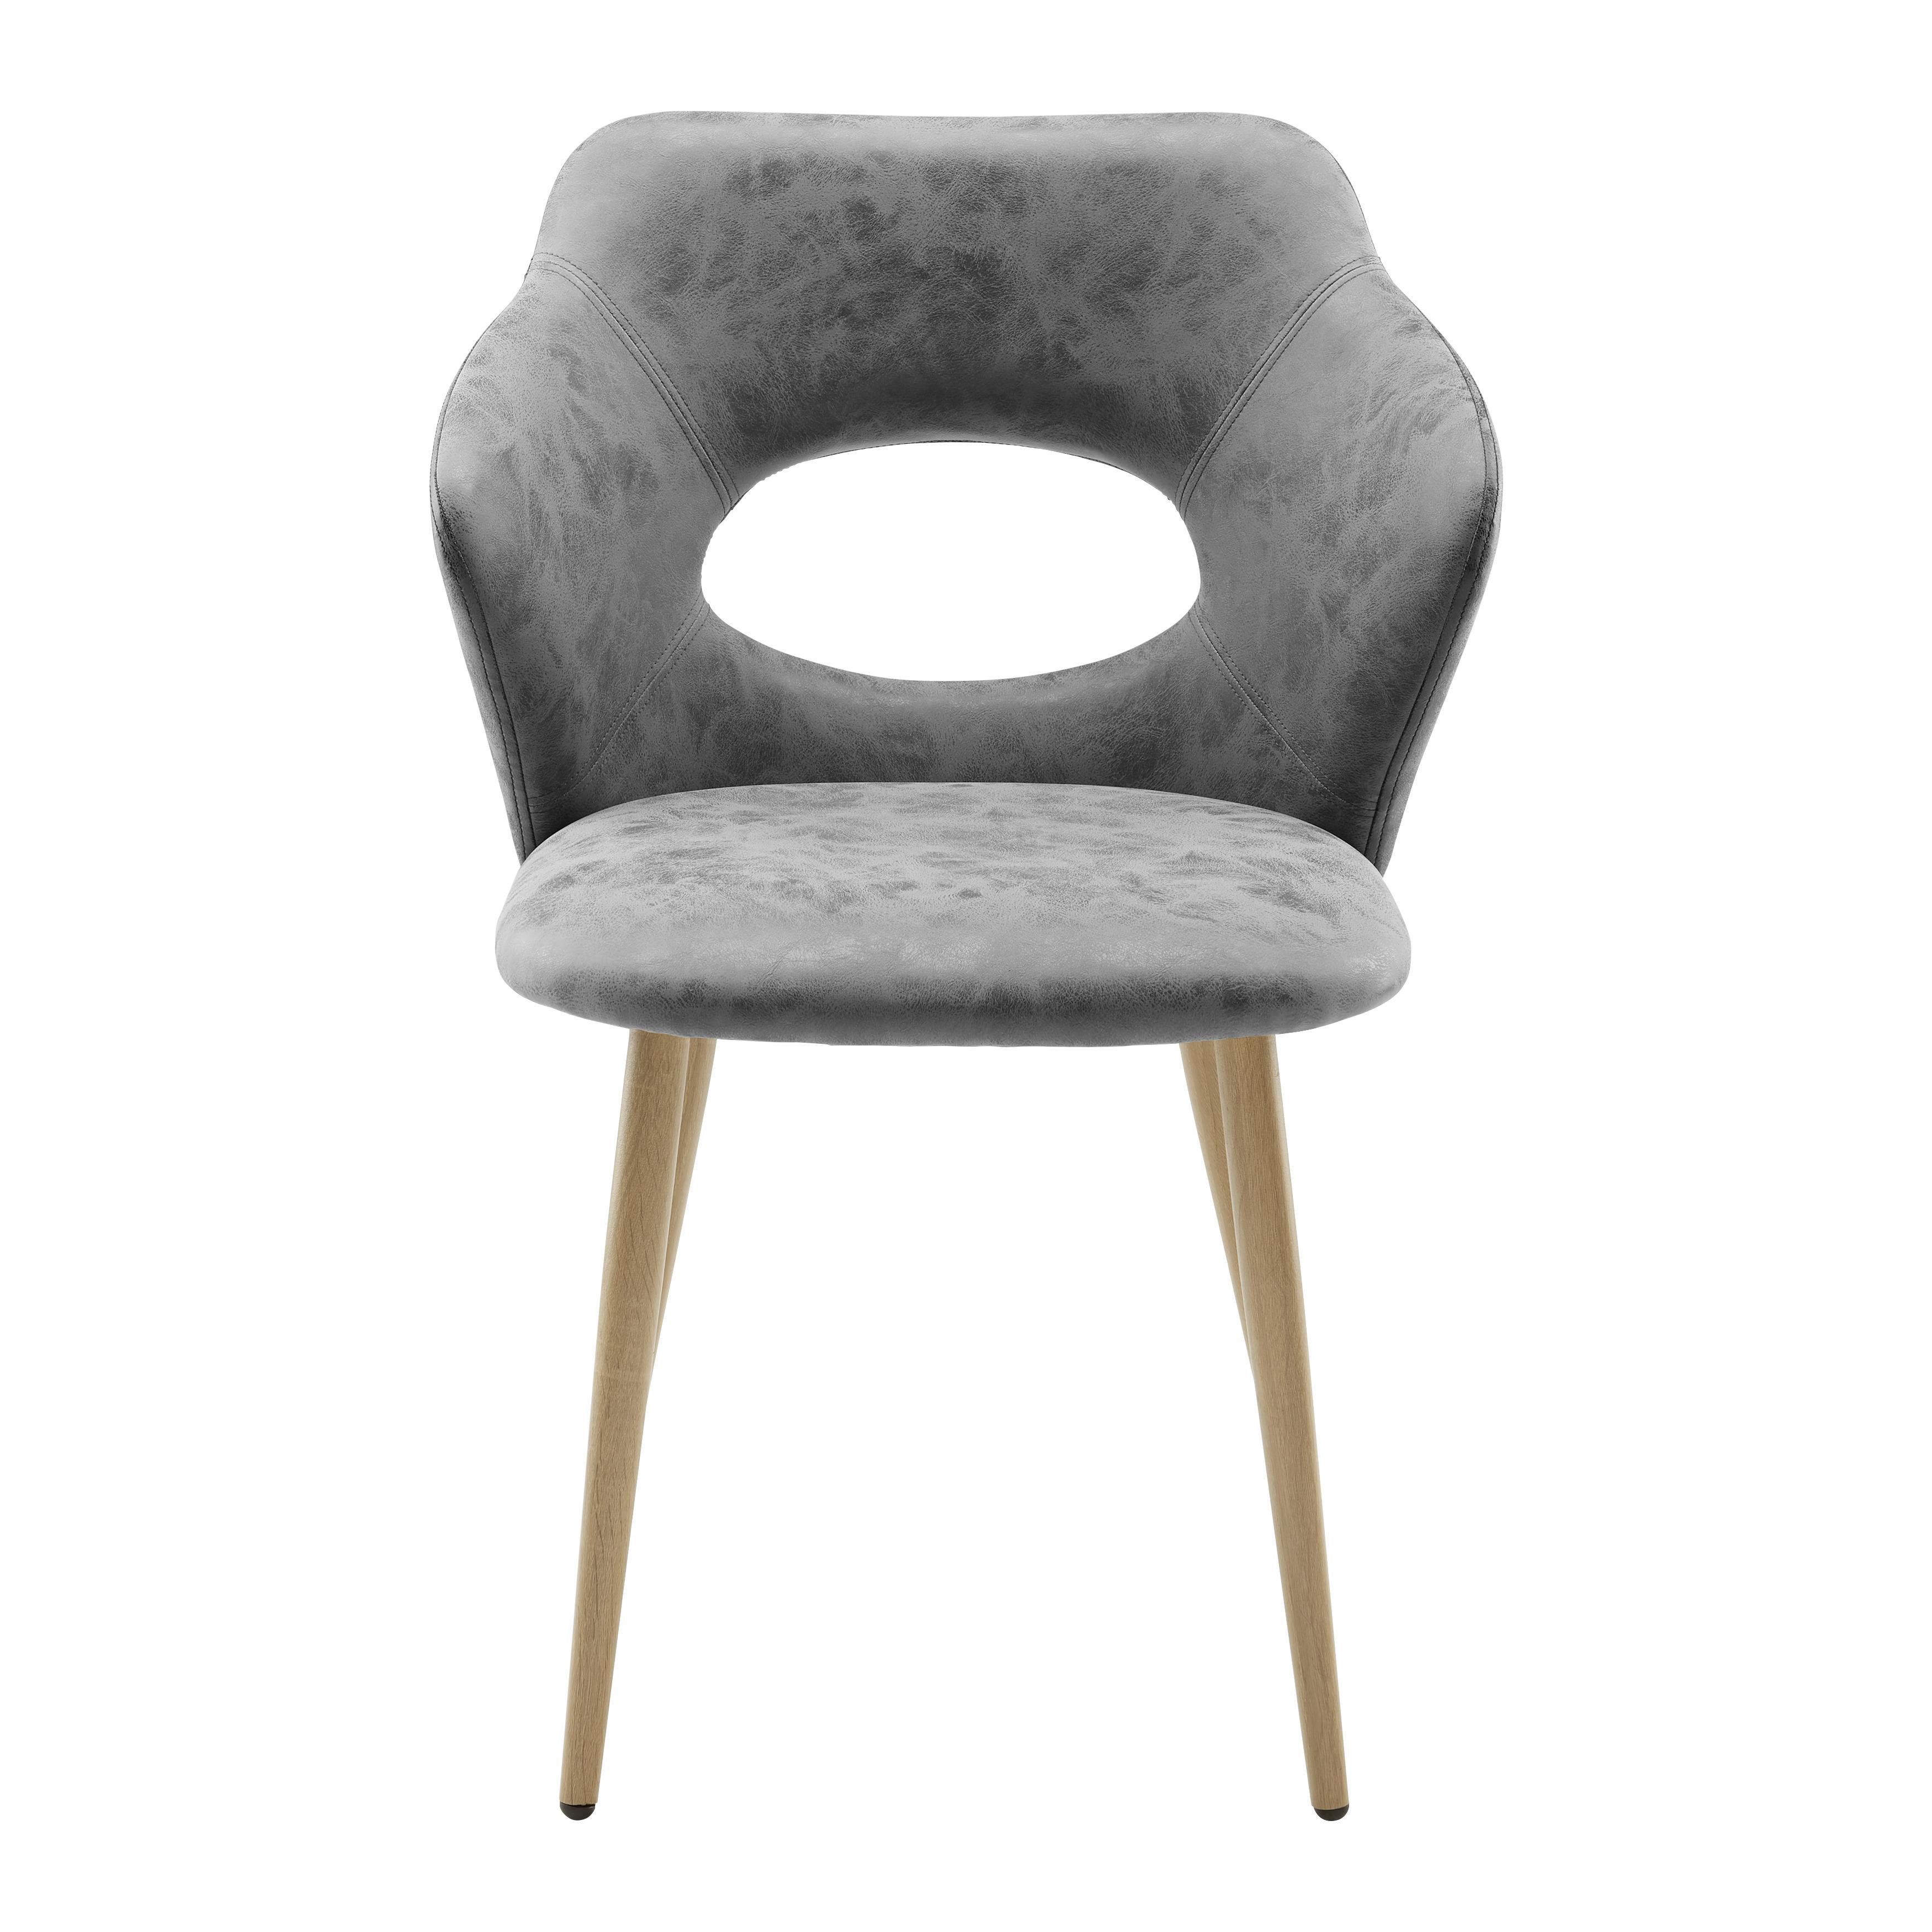 Jídelní Židle Liz - barvy dubu/světle šedá, Moderní, kov/textil (58/82/58cm) - Modern Living